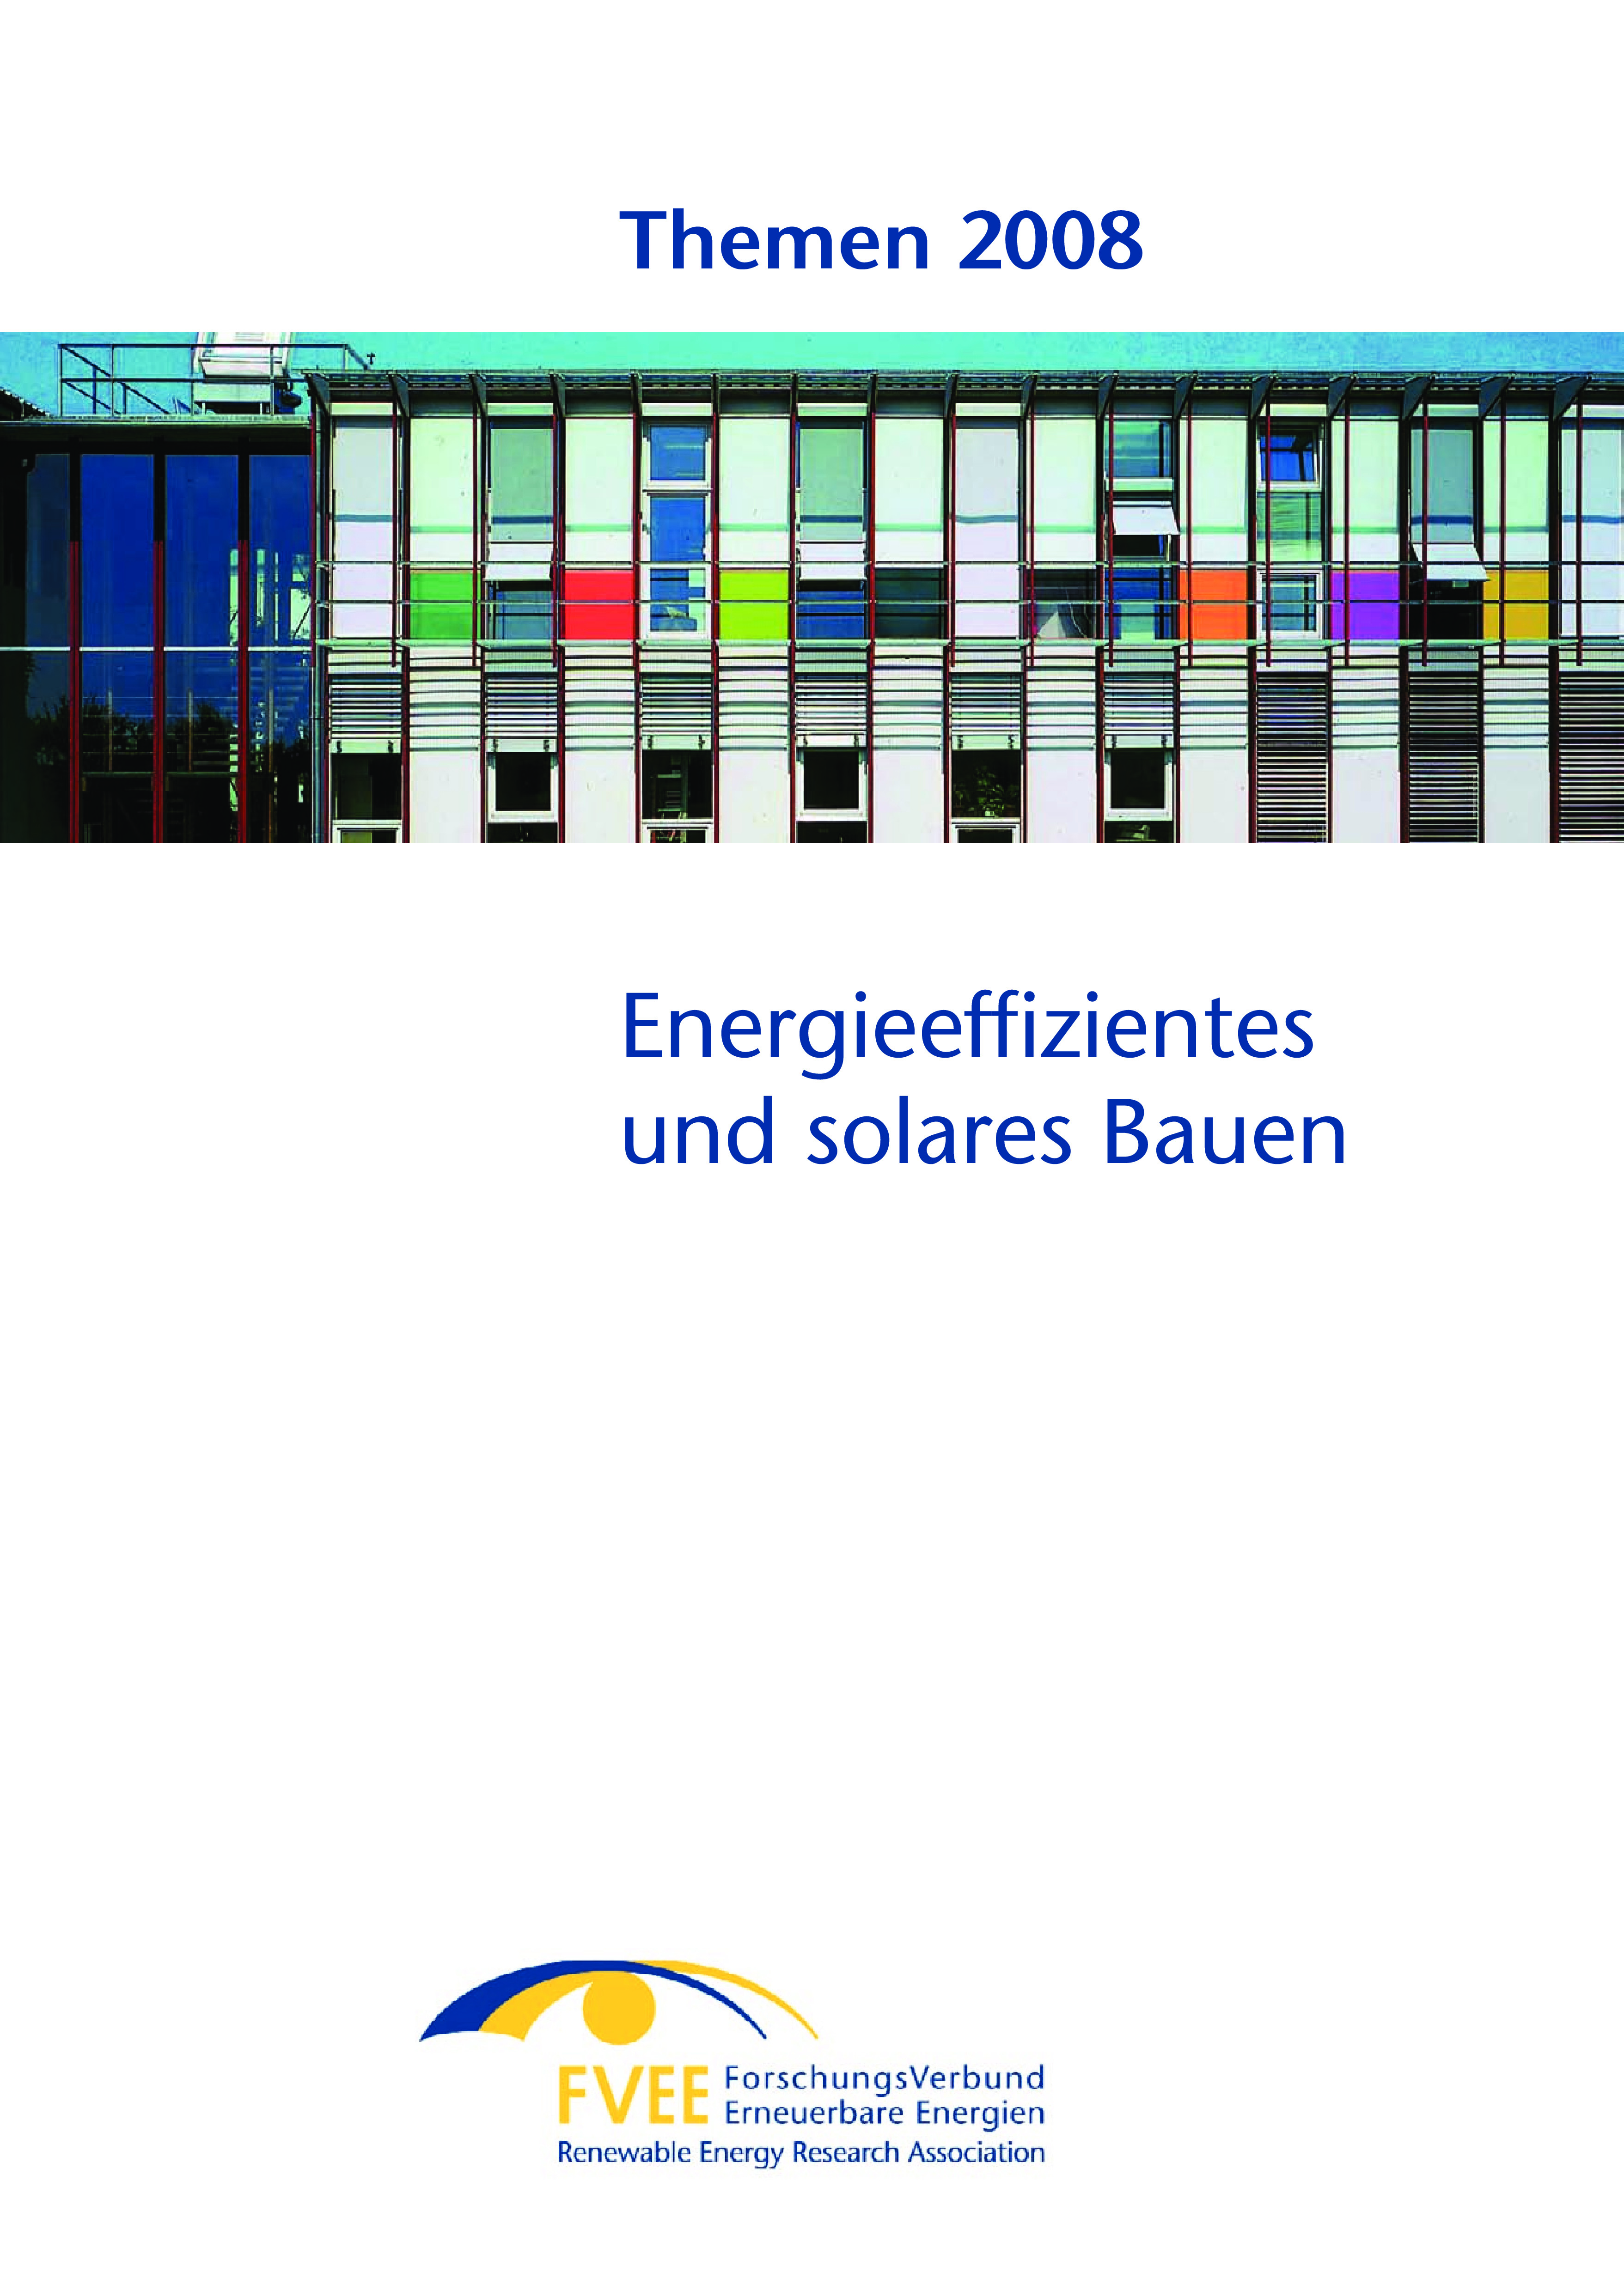 Themen 2008: Energieeffizientes und solares Bauen (CD bestellbar)